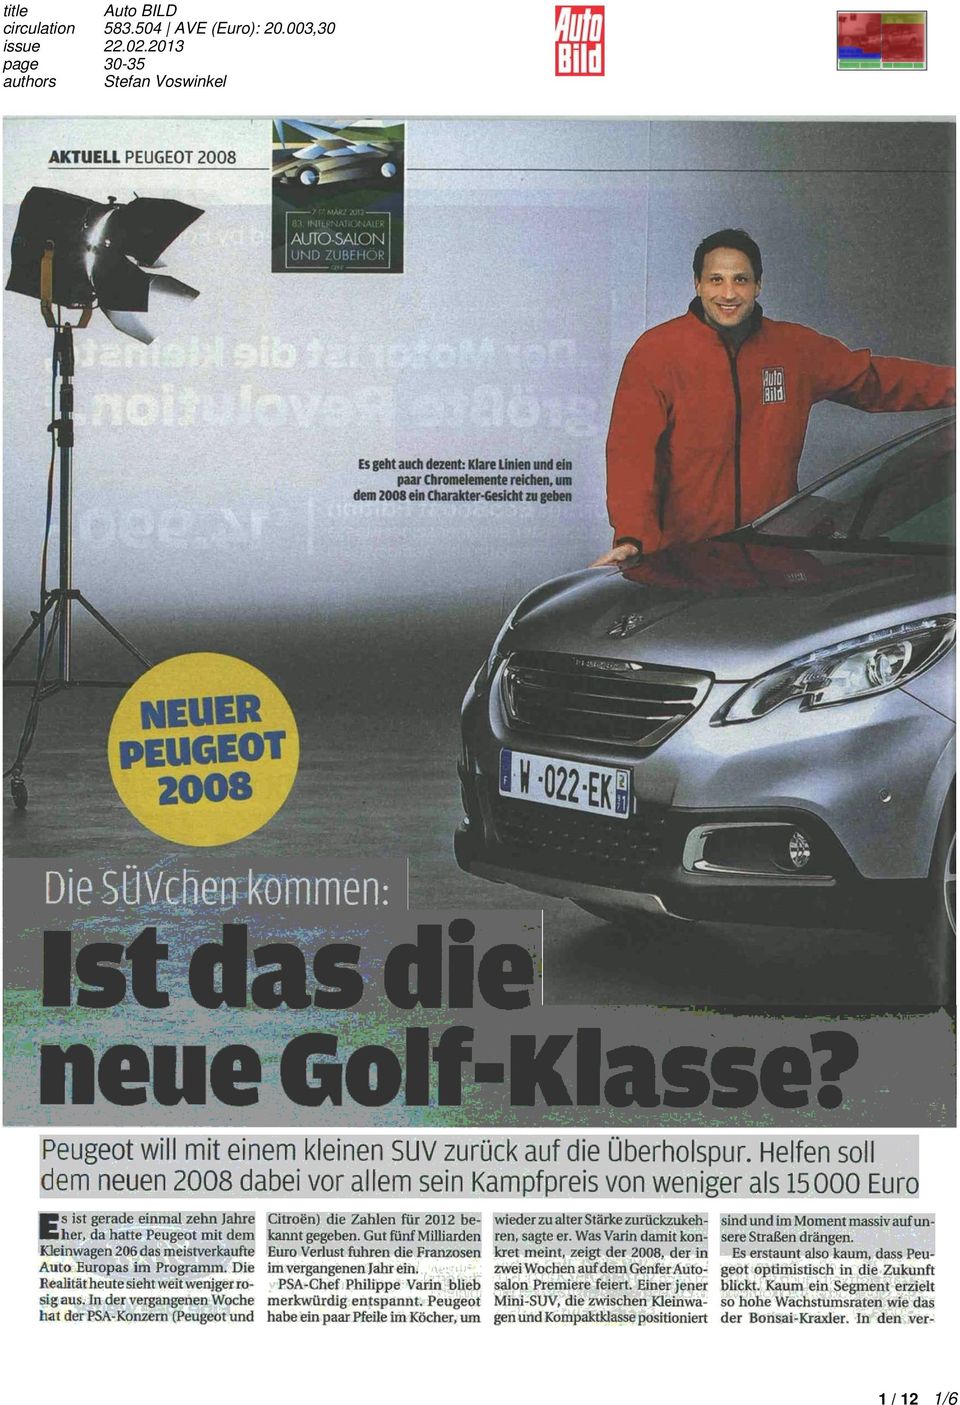 2013 22.02.2013 page 3035 page 3035 authors Stefan Voswinkel Peugeot will mit einem kleinen SUV zurück auf die Überholspur.